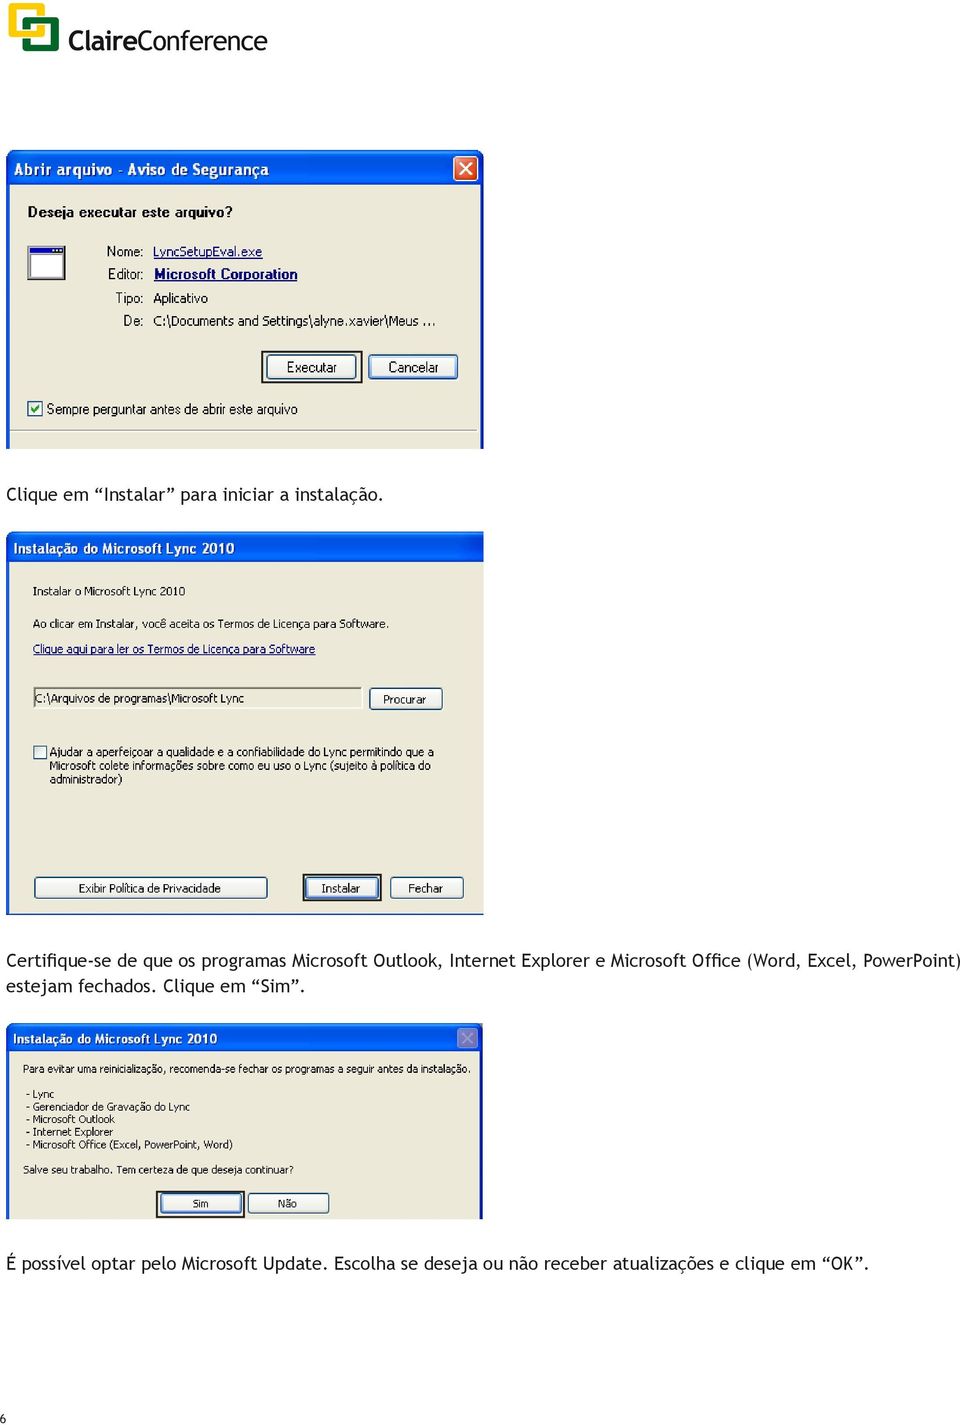 Microsoft Office (Word, Excel, PowerPoint) estejam fechados. Clique em Sim.